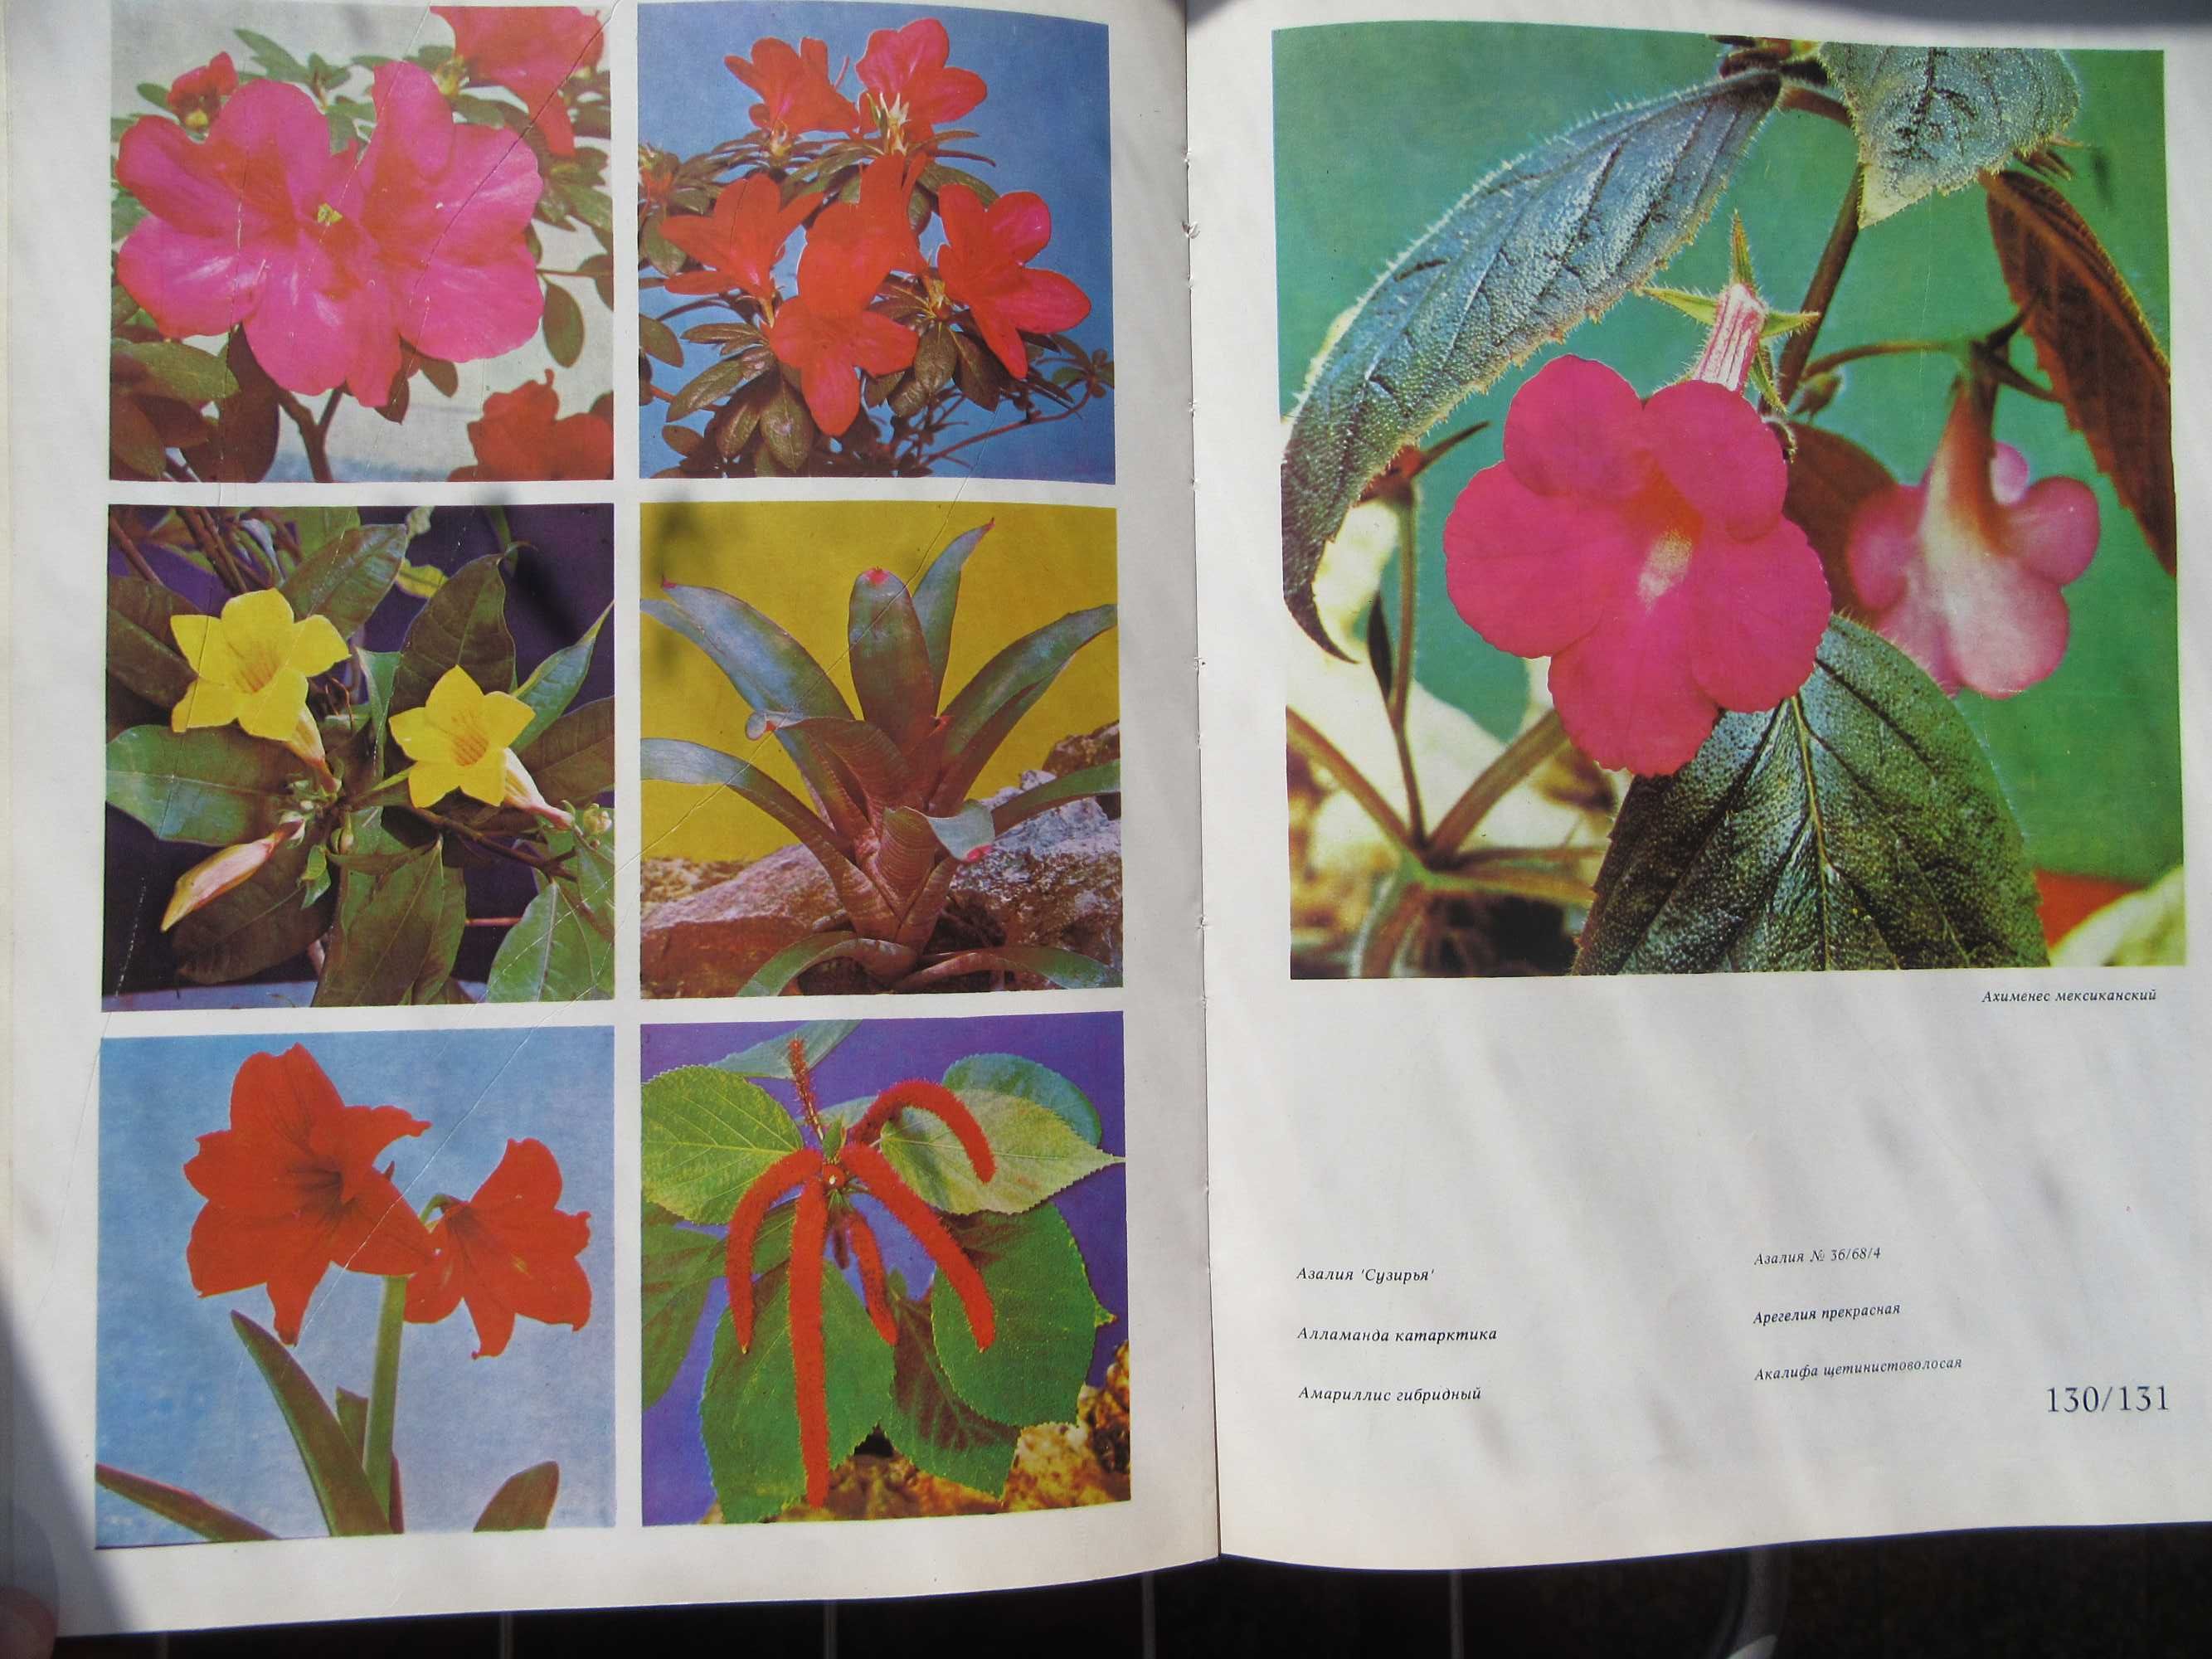 Цветы.Комнатные растения и декоративно-цветущие кустарники.1978 г.